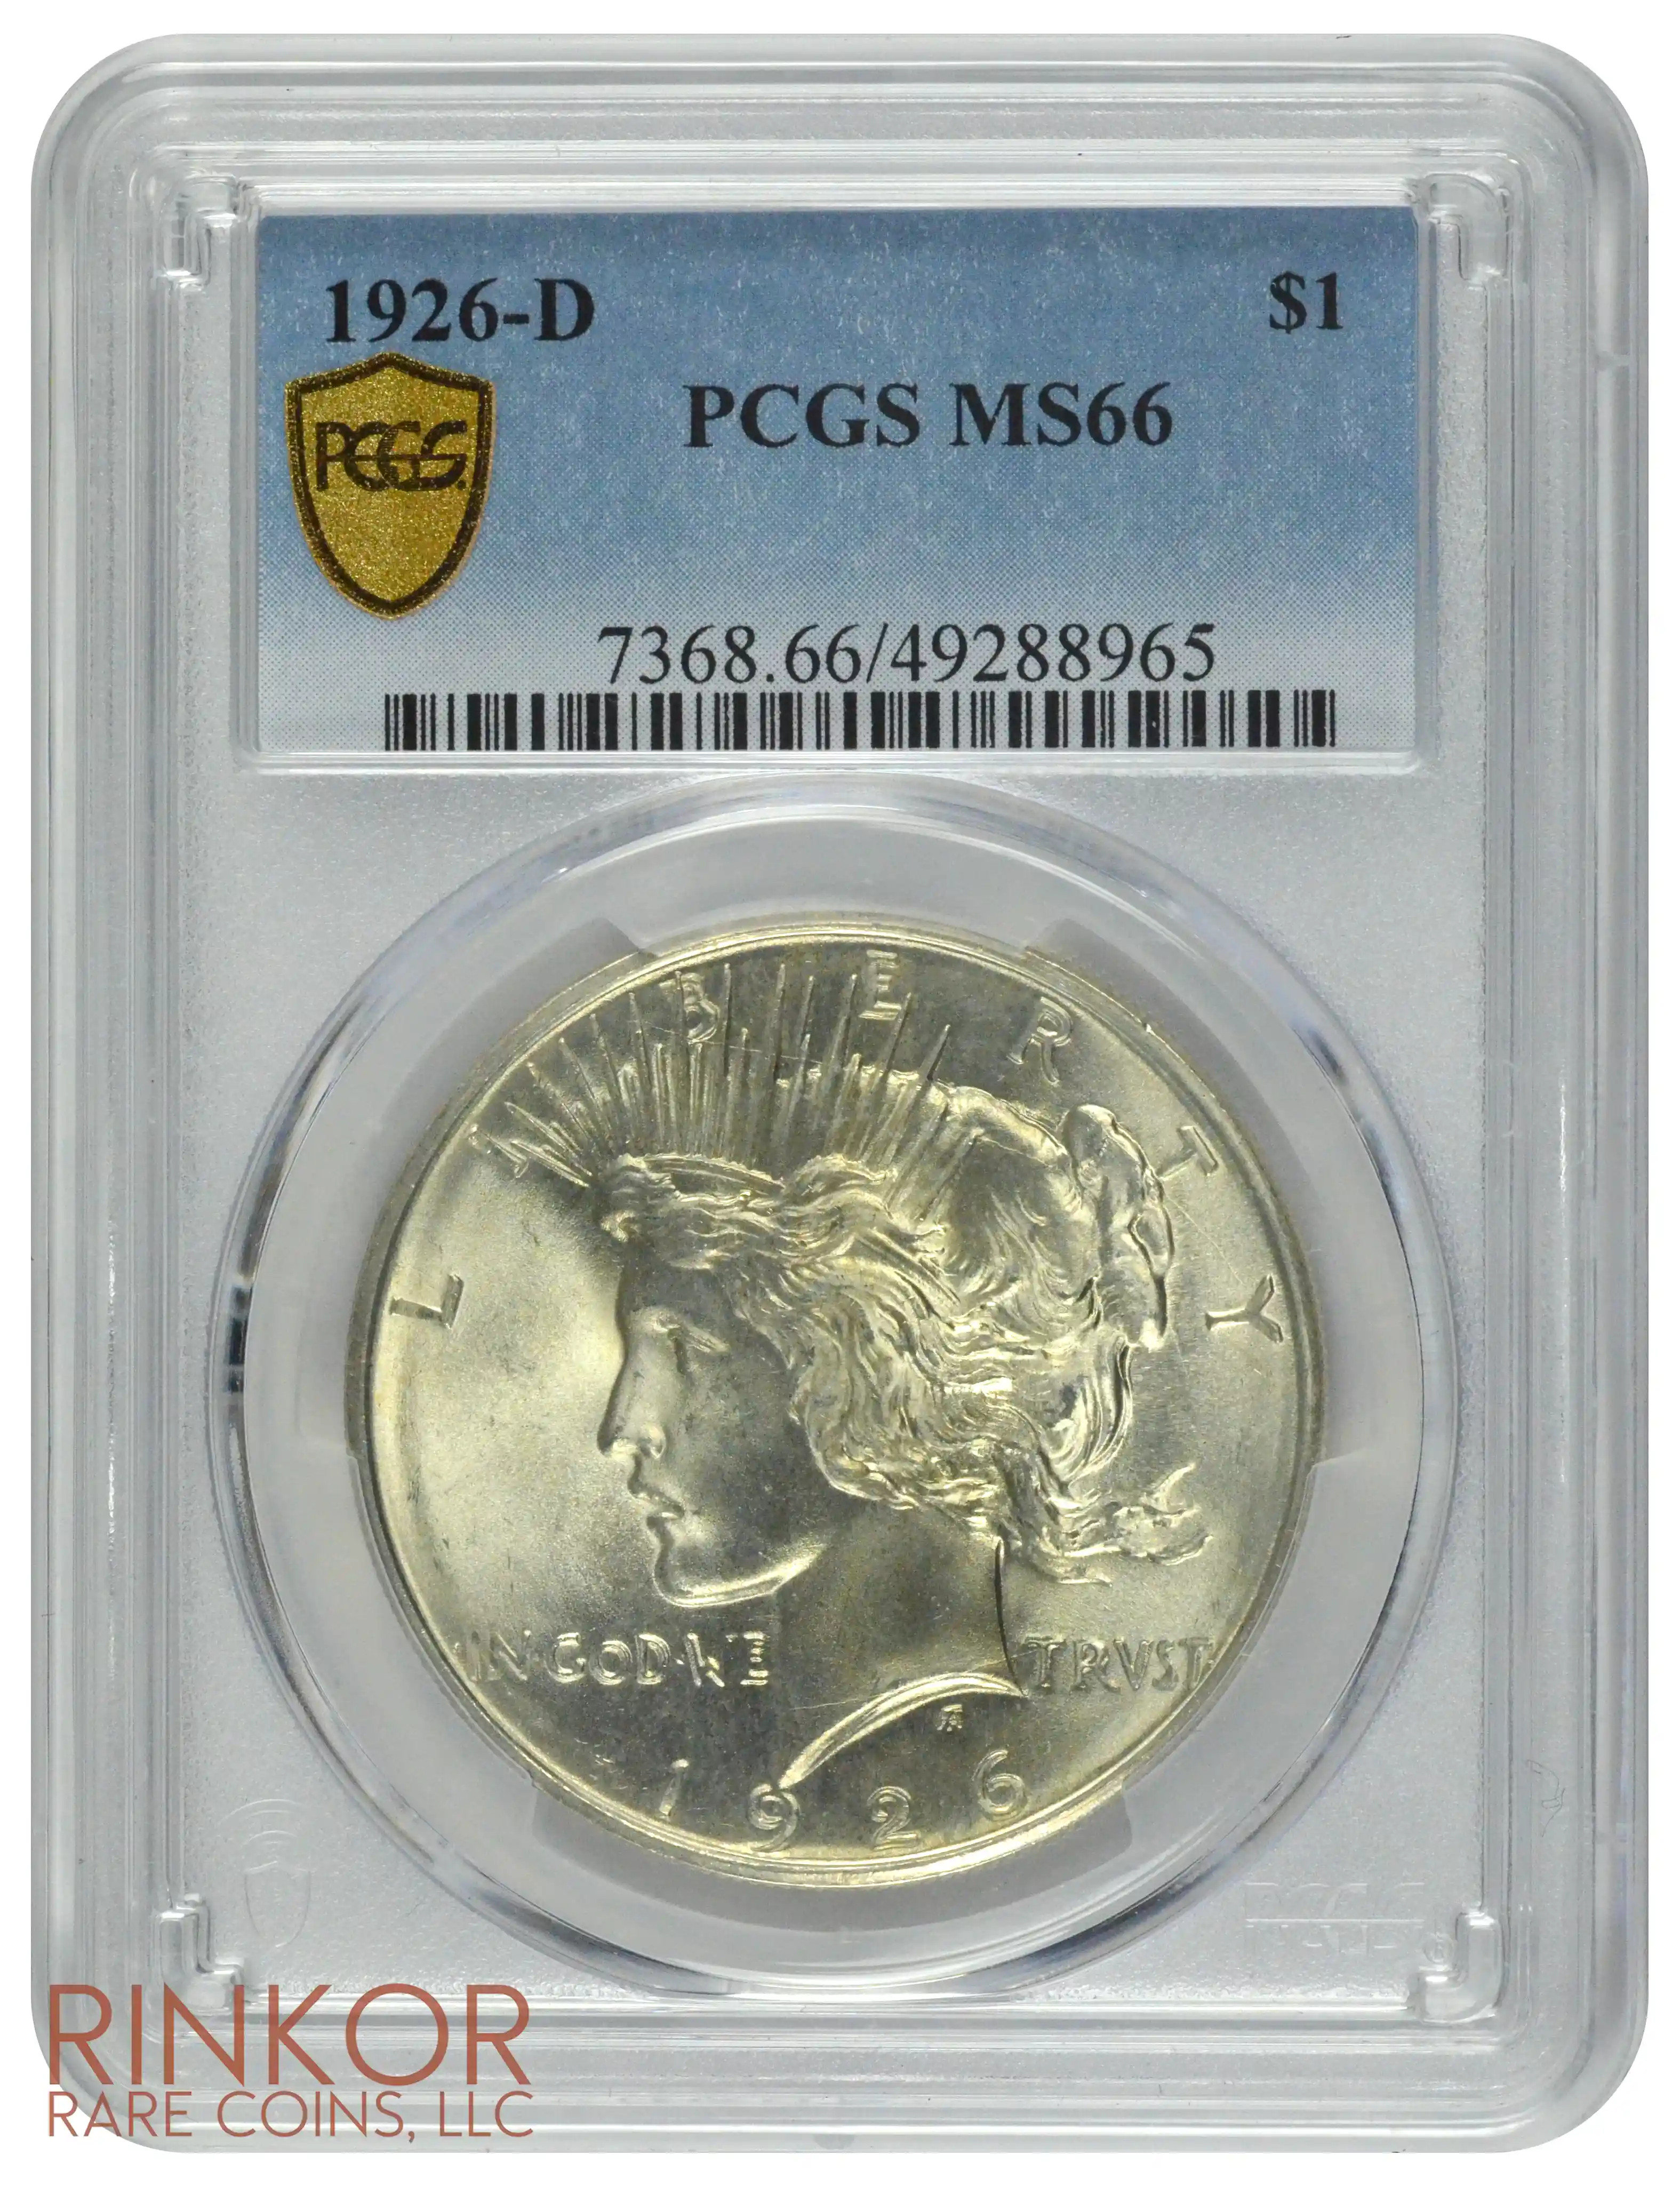 1926-D $1 PCGS MS 66